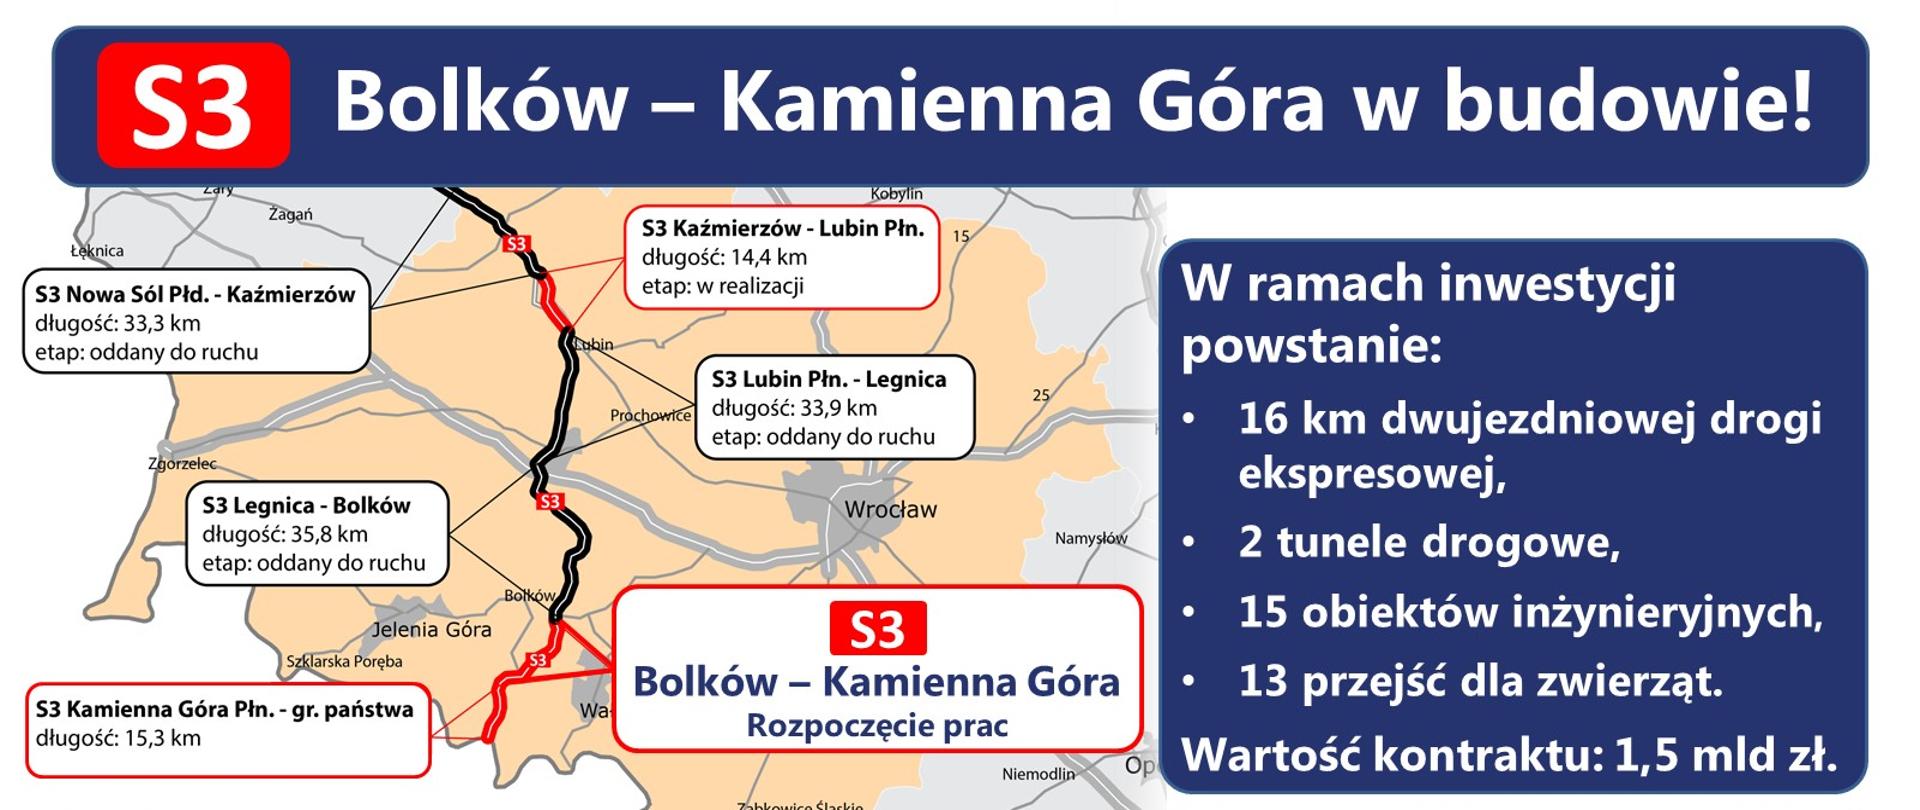 Rozpoczyna się budowa S3 Bolków - Kamienna Góra - infografika